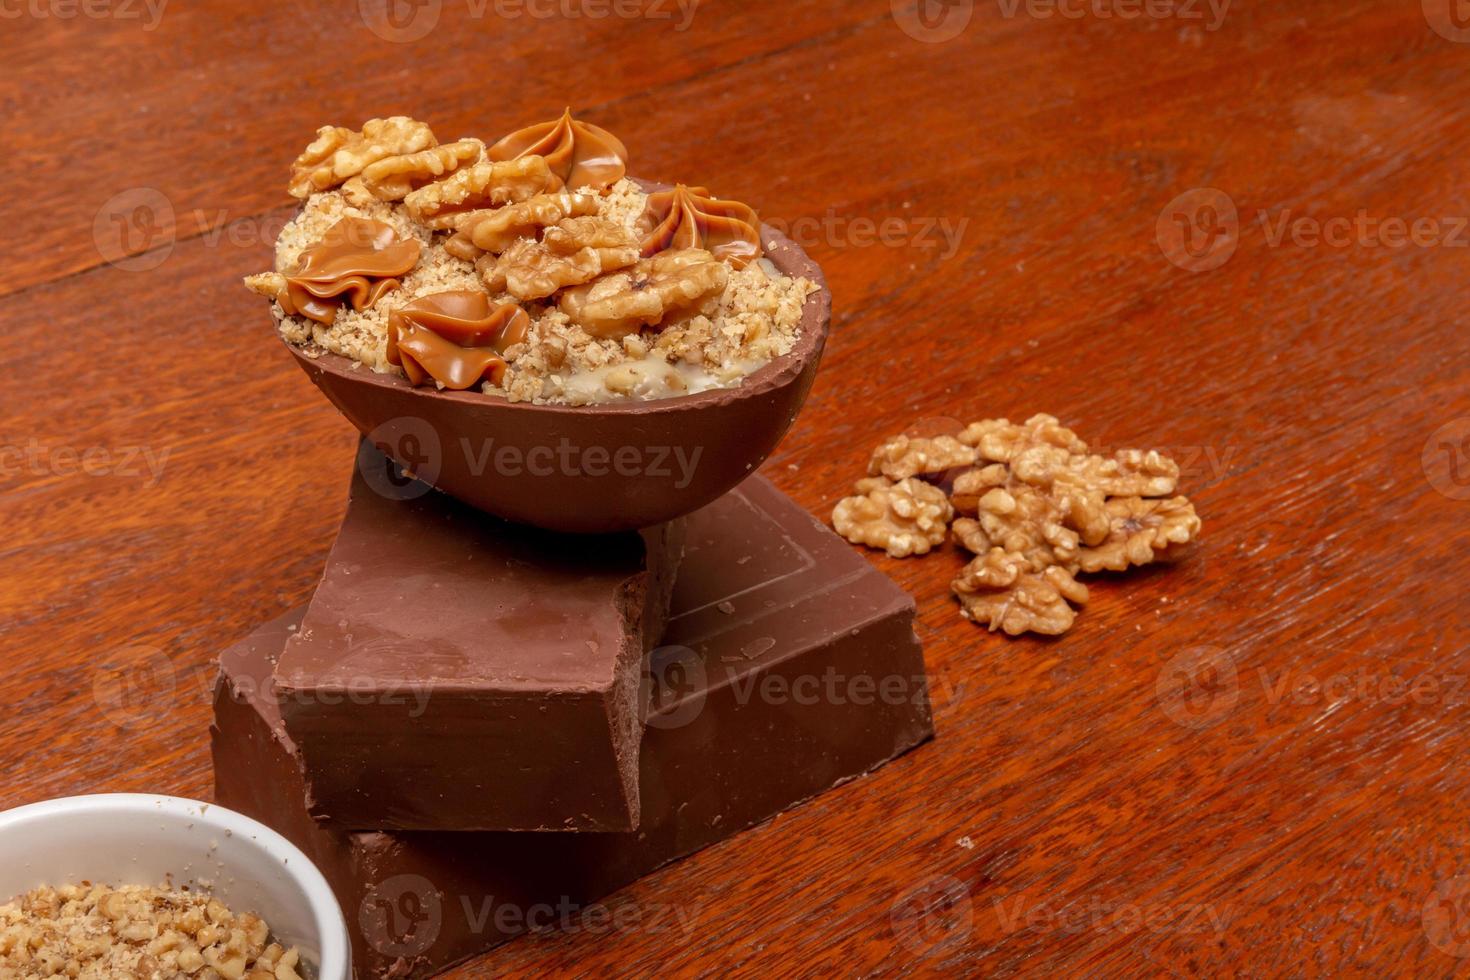 huevo de chocolate relleno de nueces para pascua en el fondo de madera. huevo de pascua casero foto